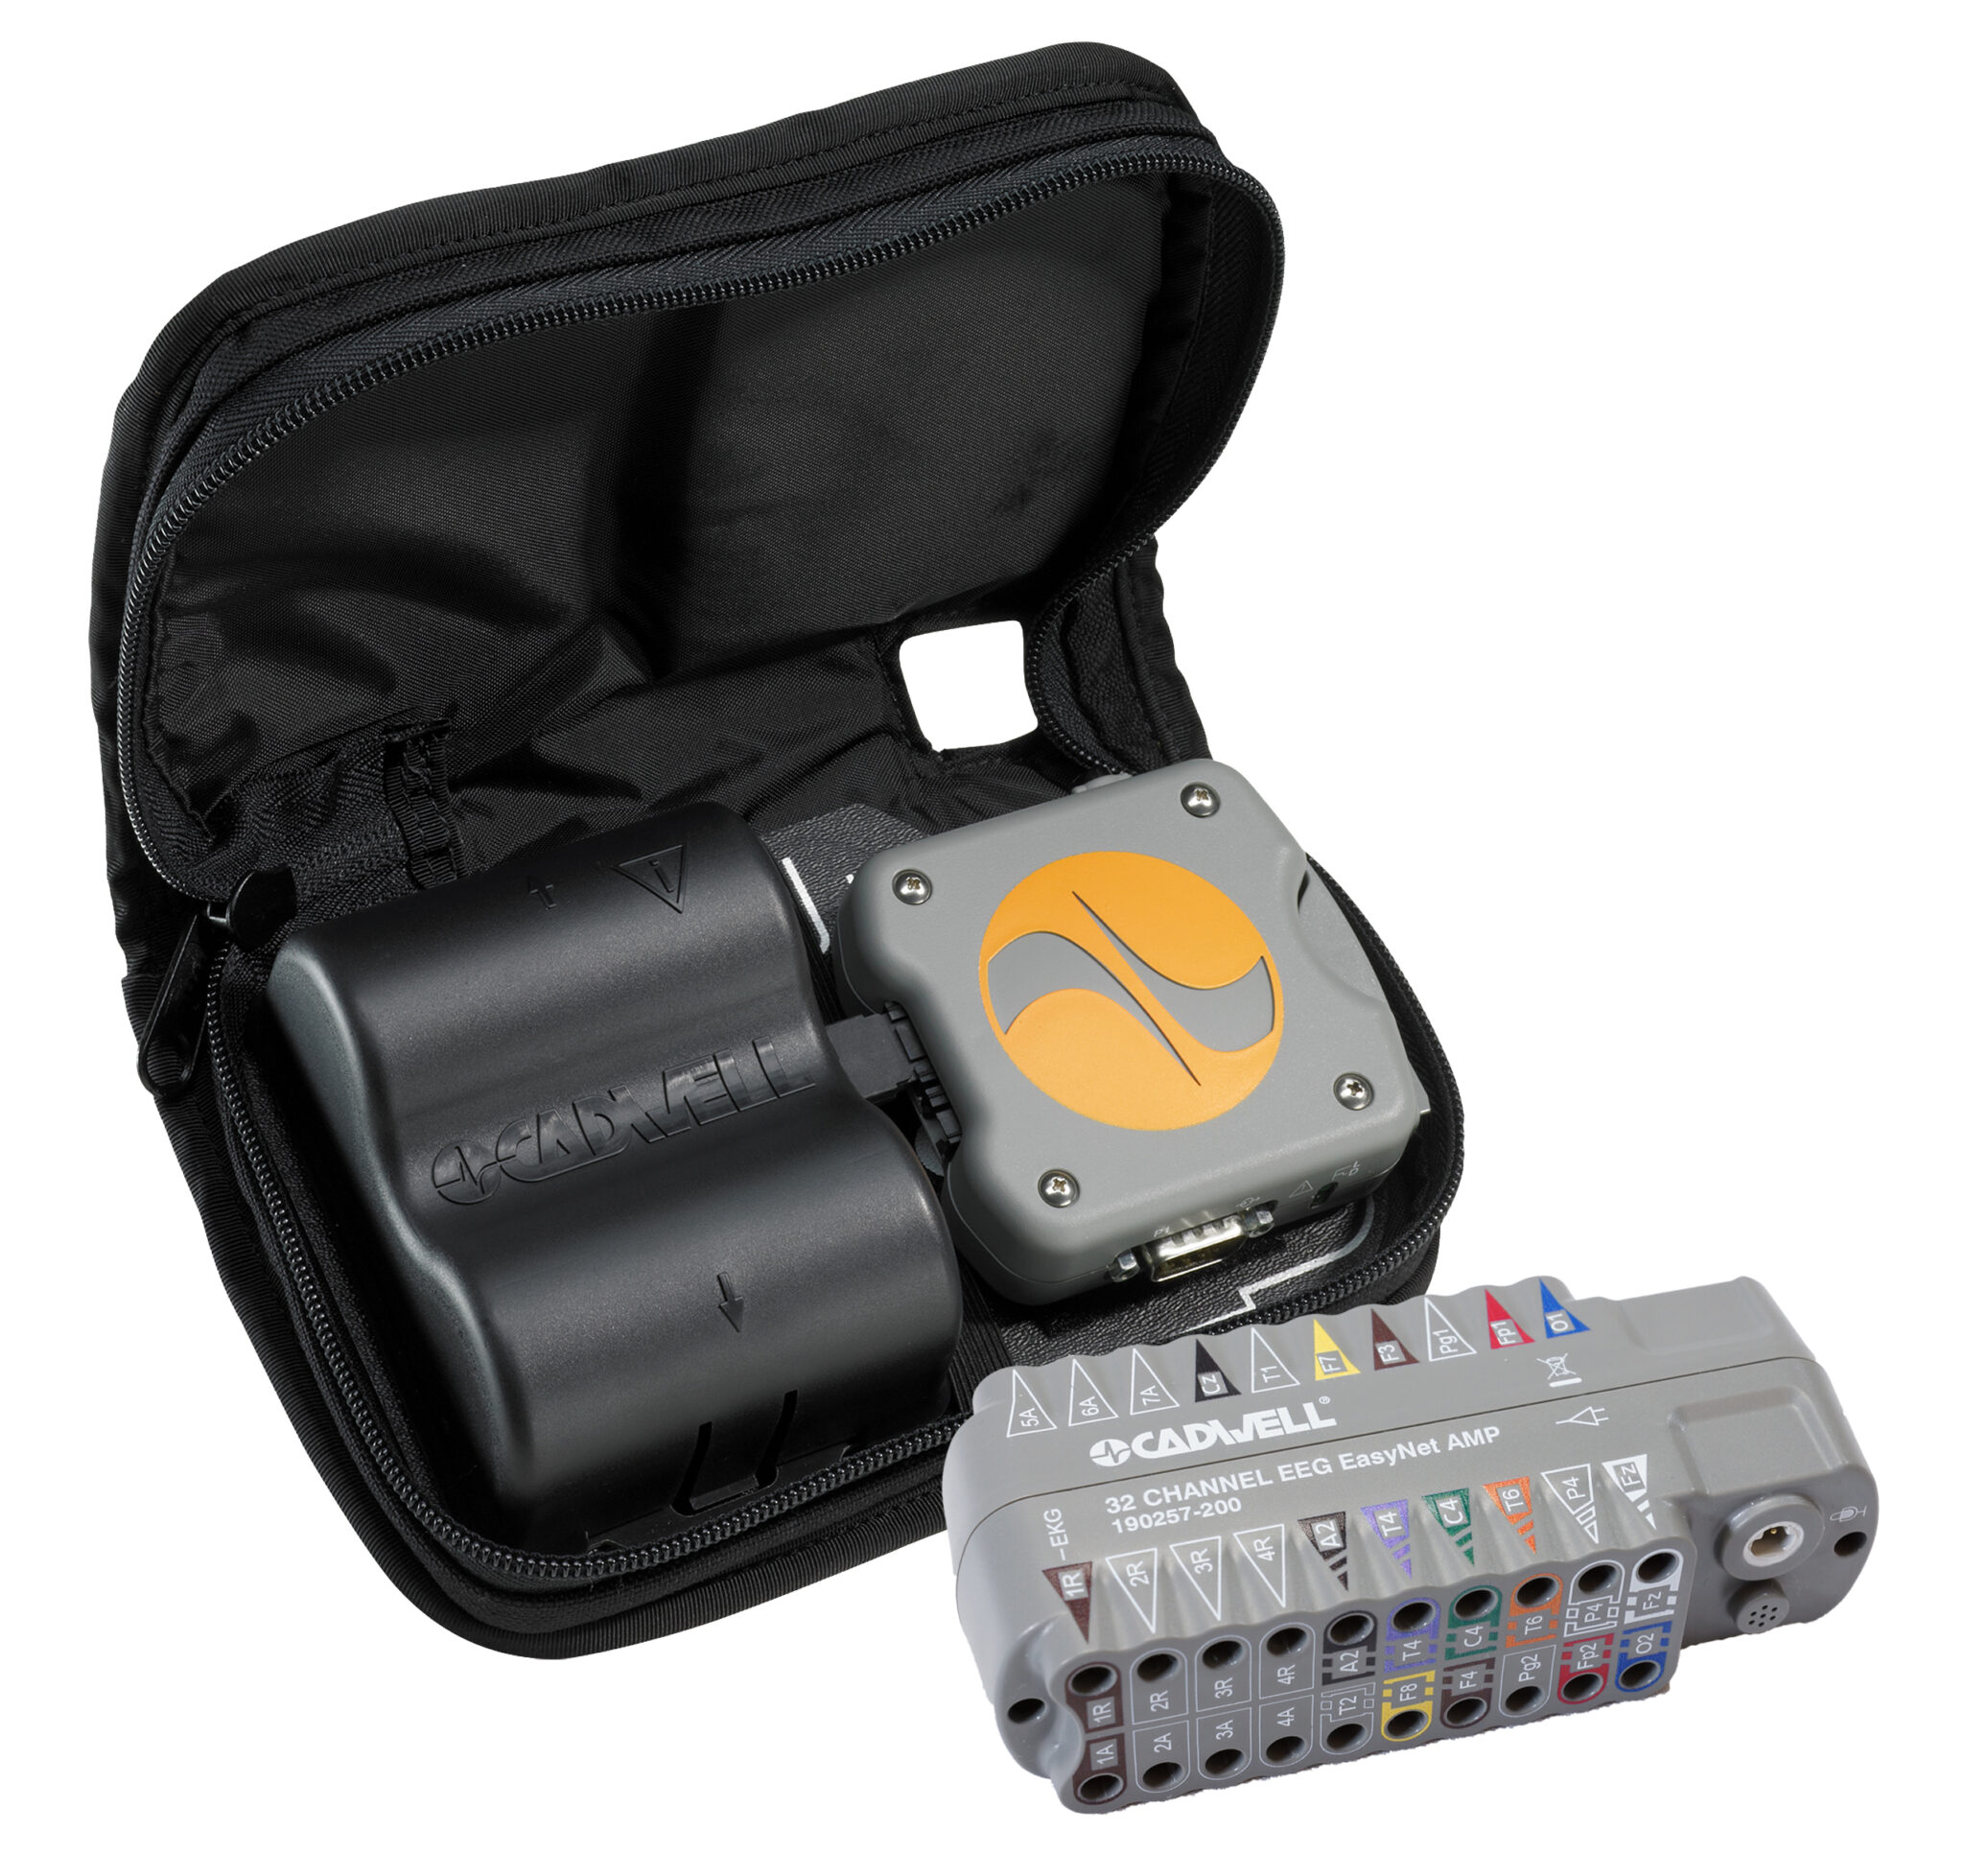 Easy II Ambulatory recorder and amplifier